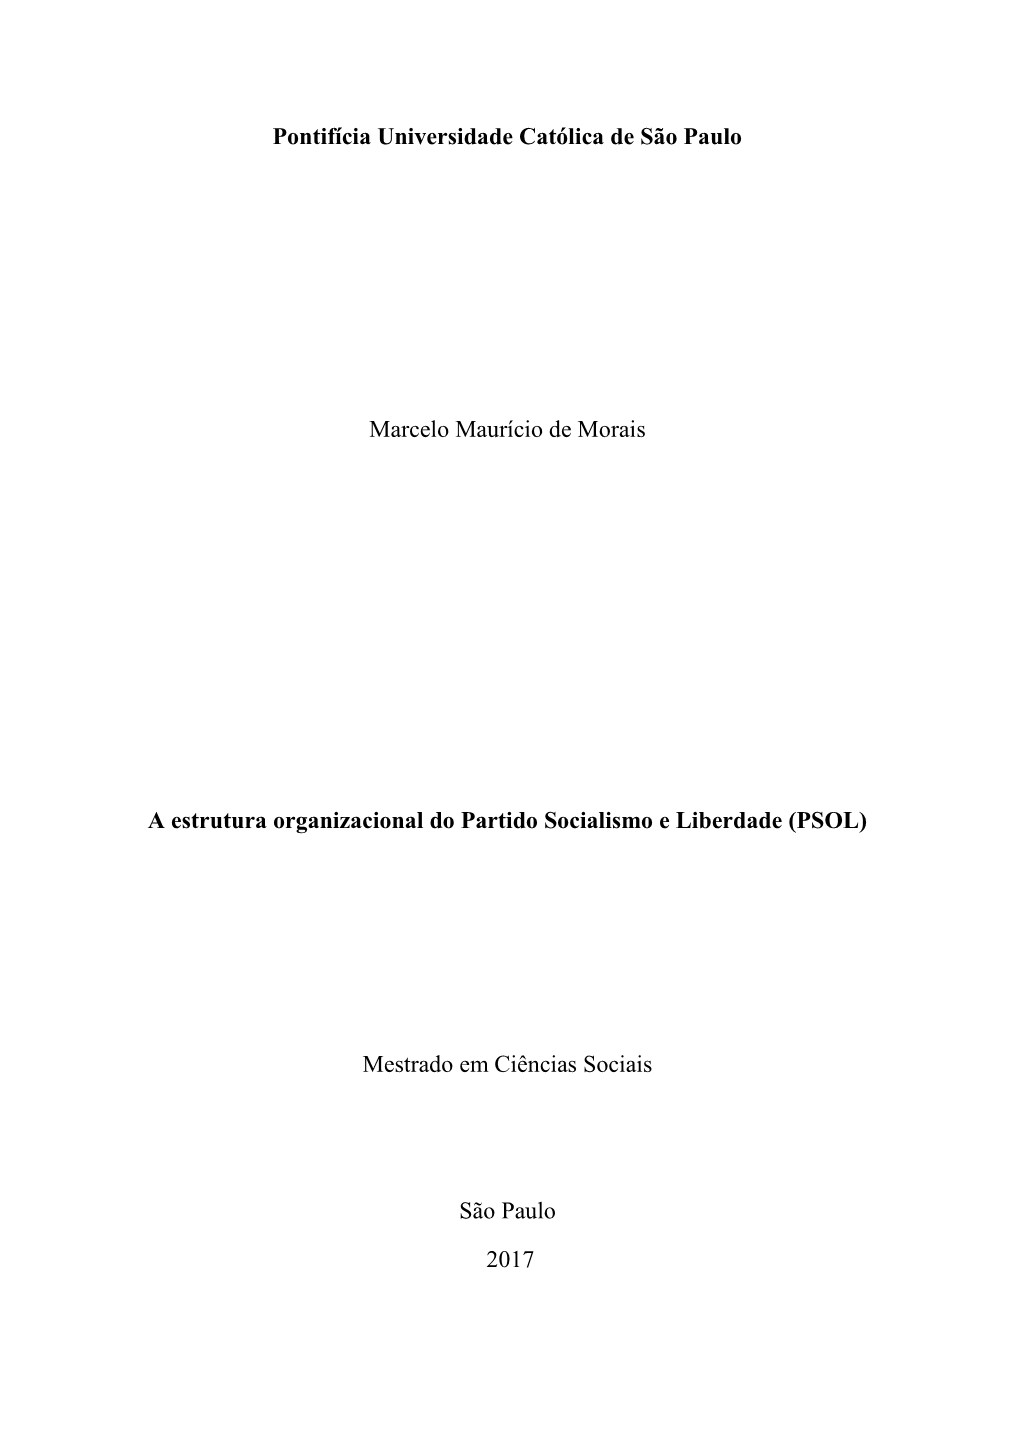 Pontifícia Universidade Católica De São Paulo Marcelo Maurício De Morais a Estrutura Organizacional Do Partido Socialismo E